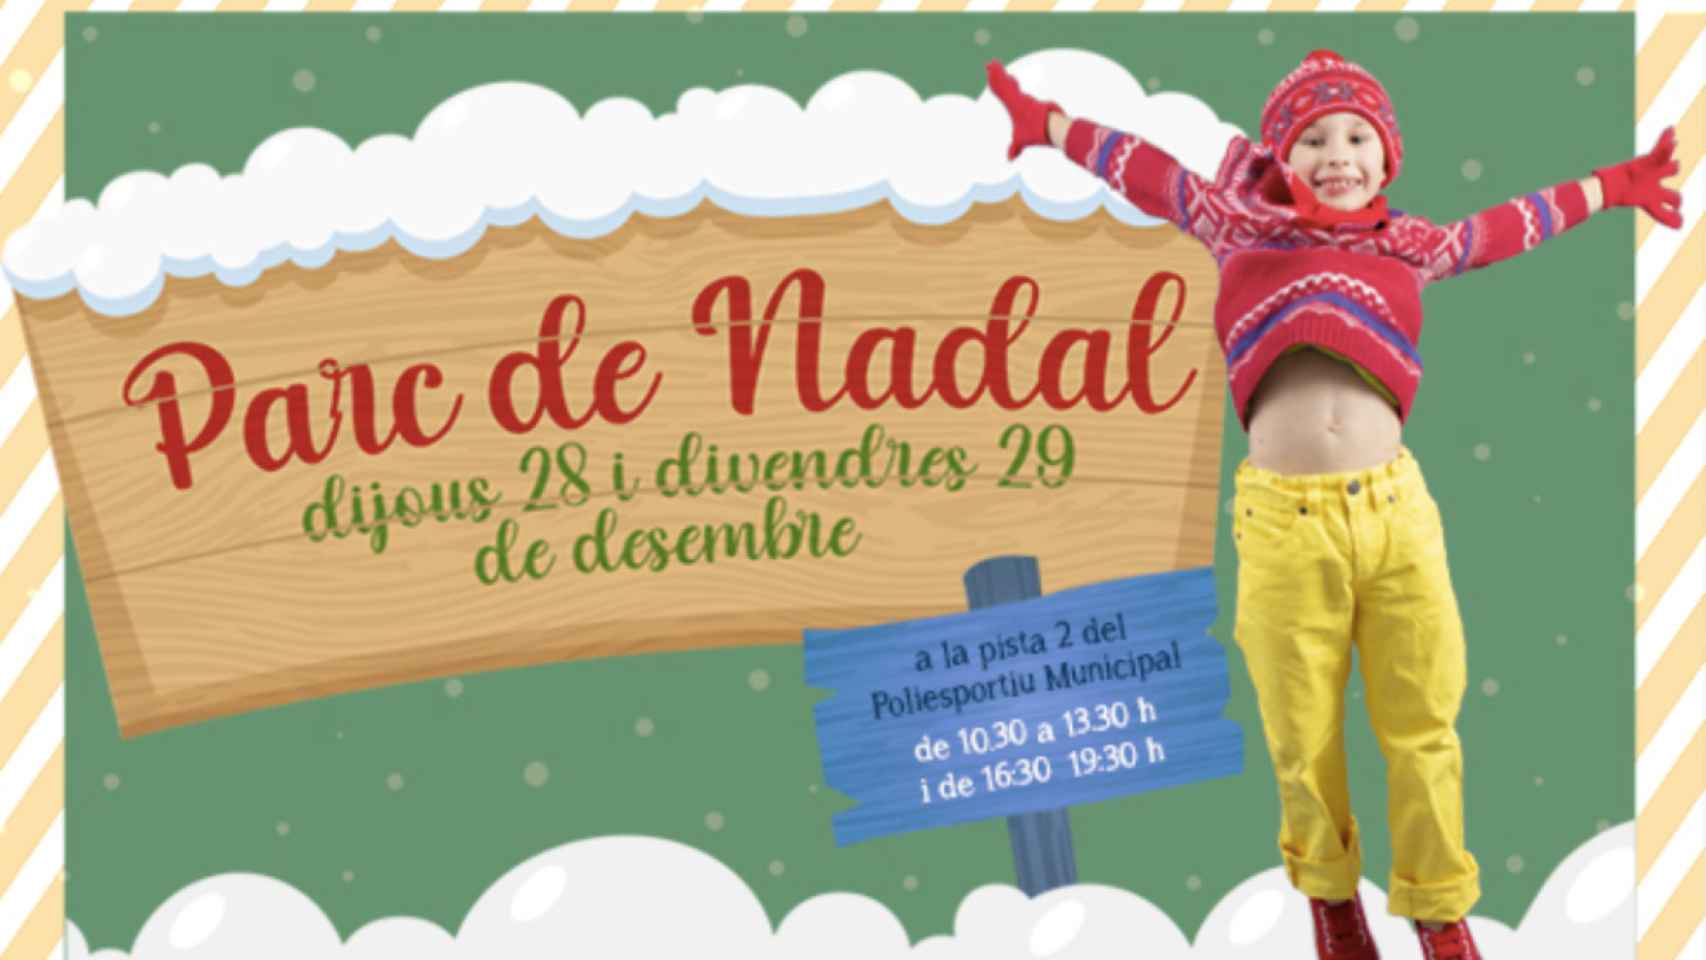 Imagen del cartel de anuncio del Parque de Navidad de Montgat